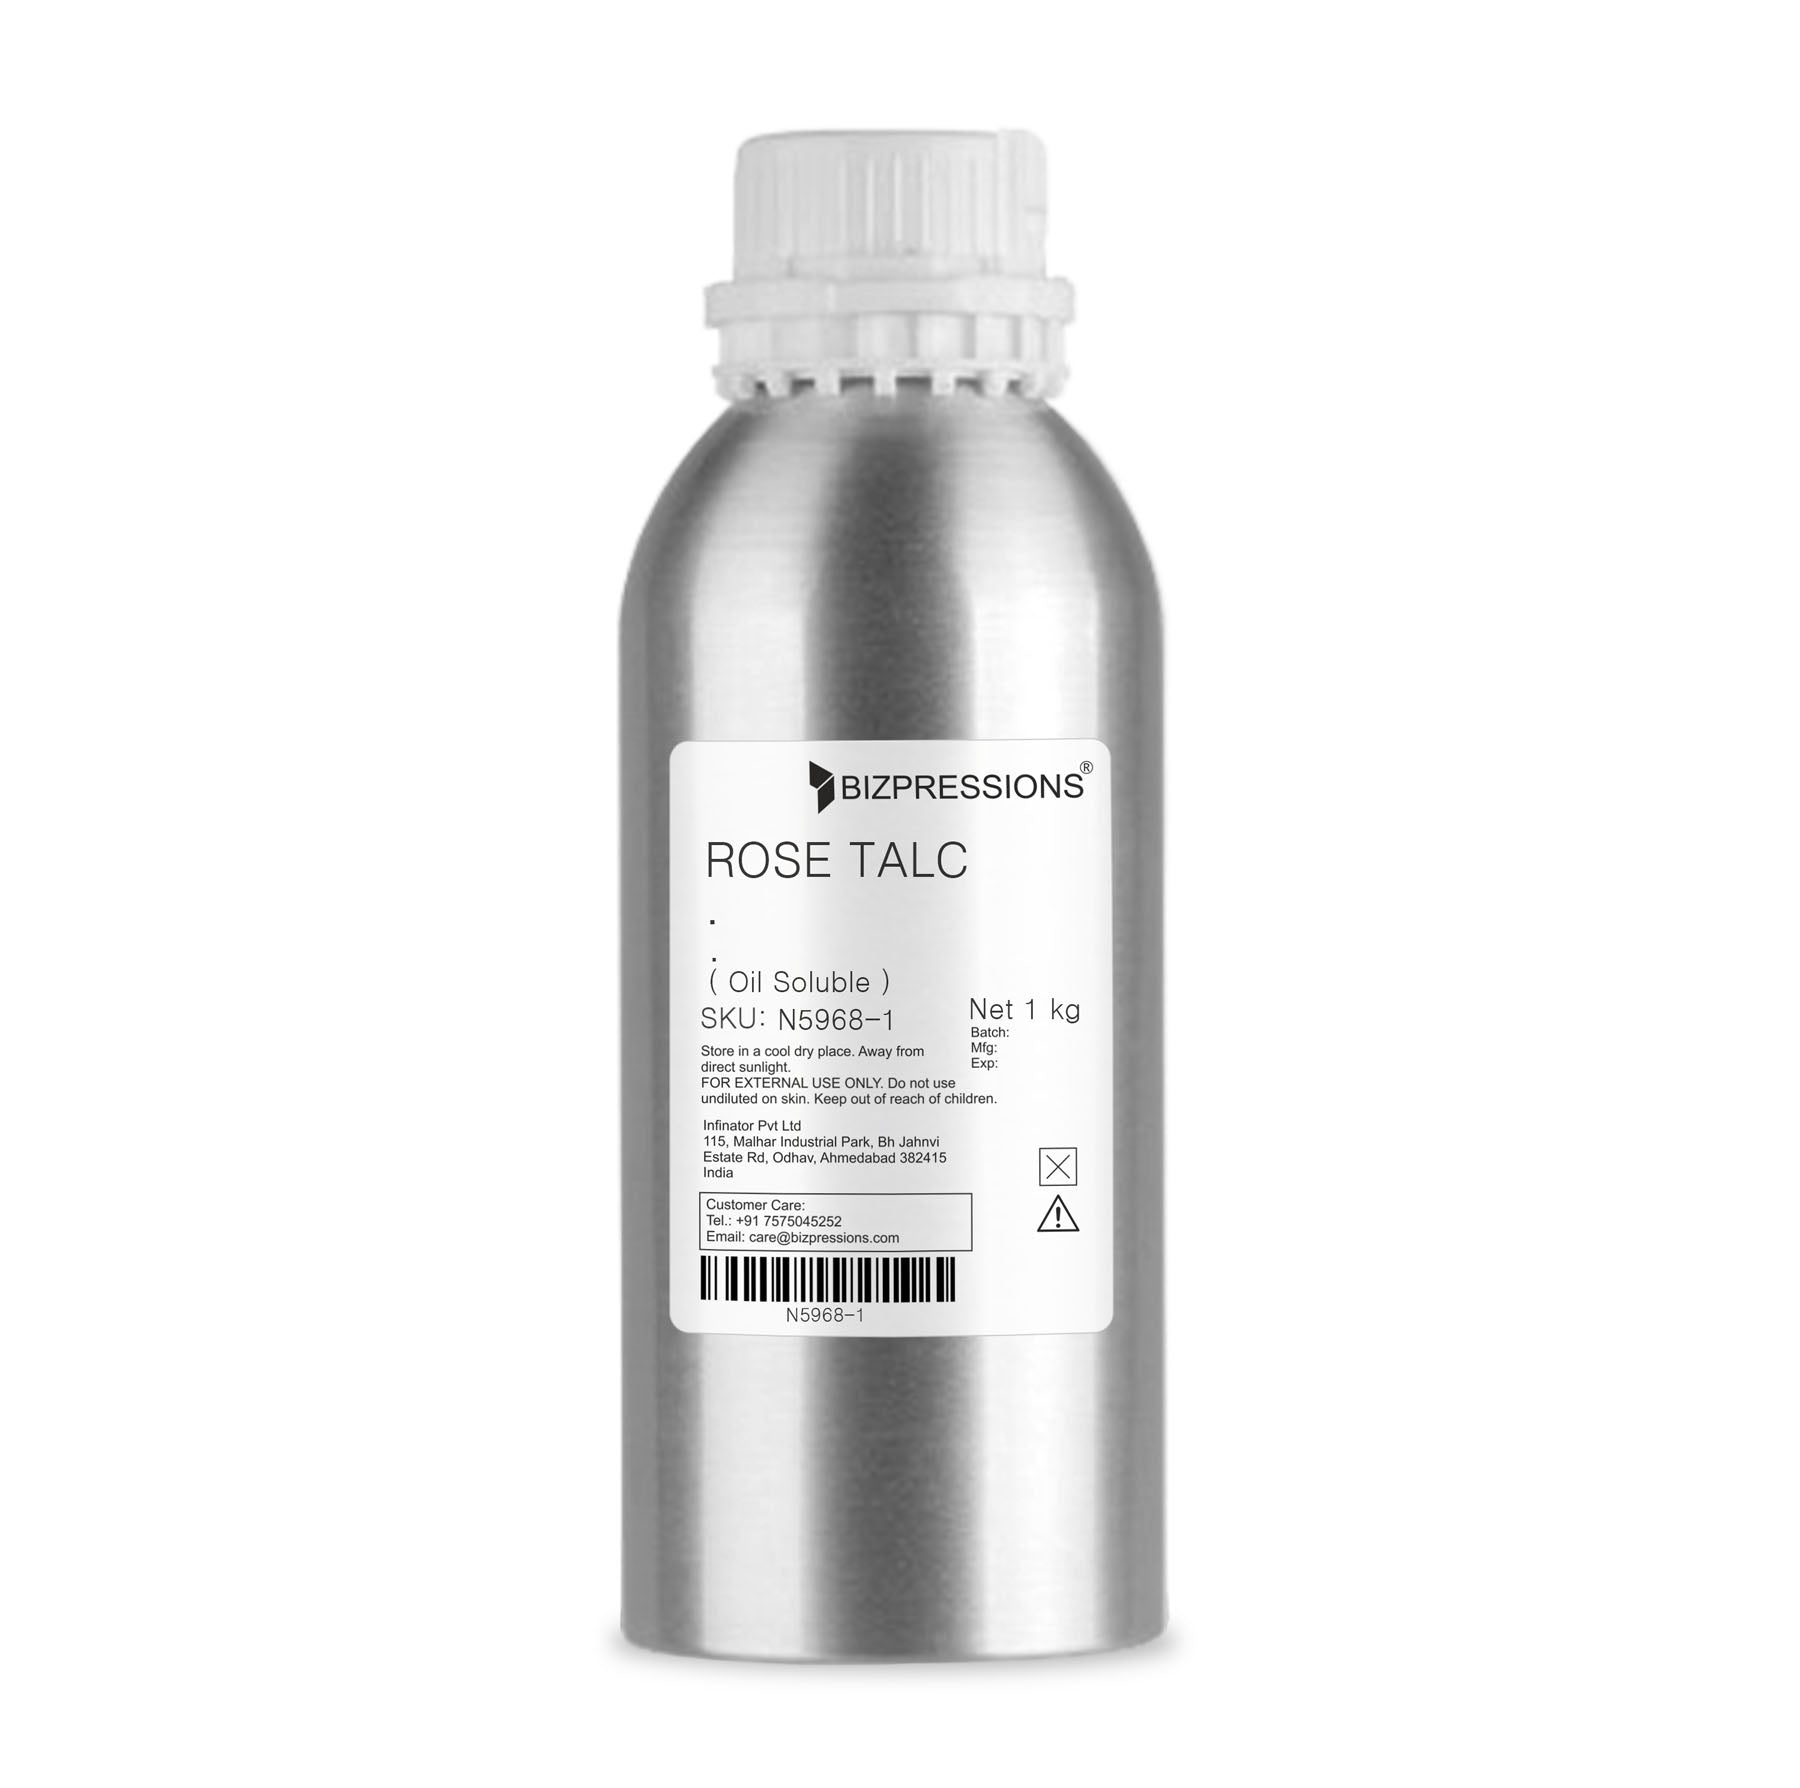 ROSE TALC - Fragrance ( Oil Soluble ) - 1 kg